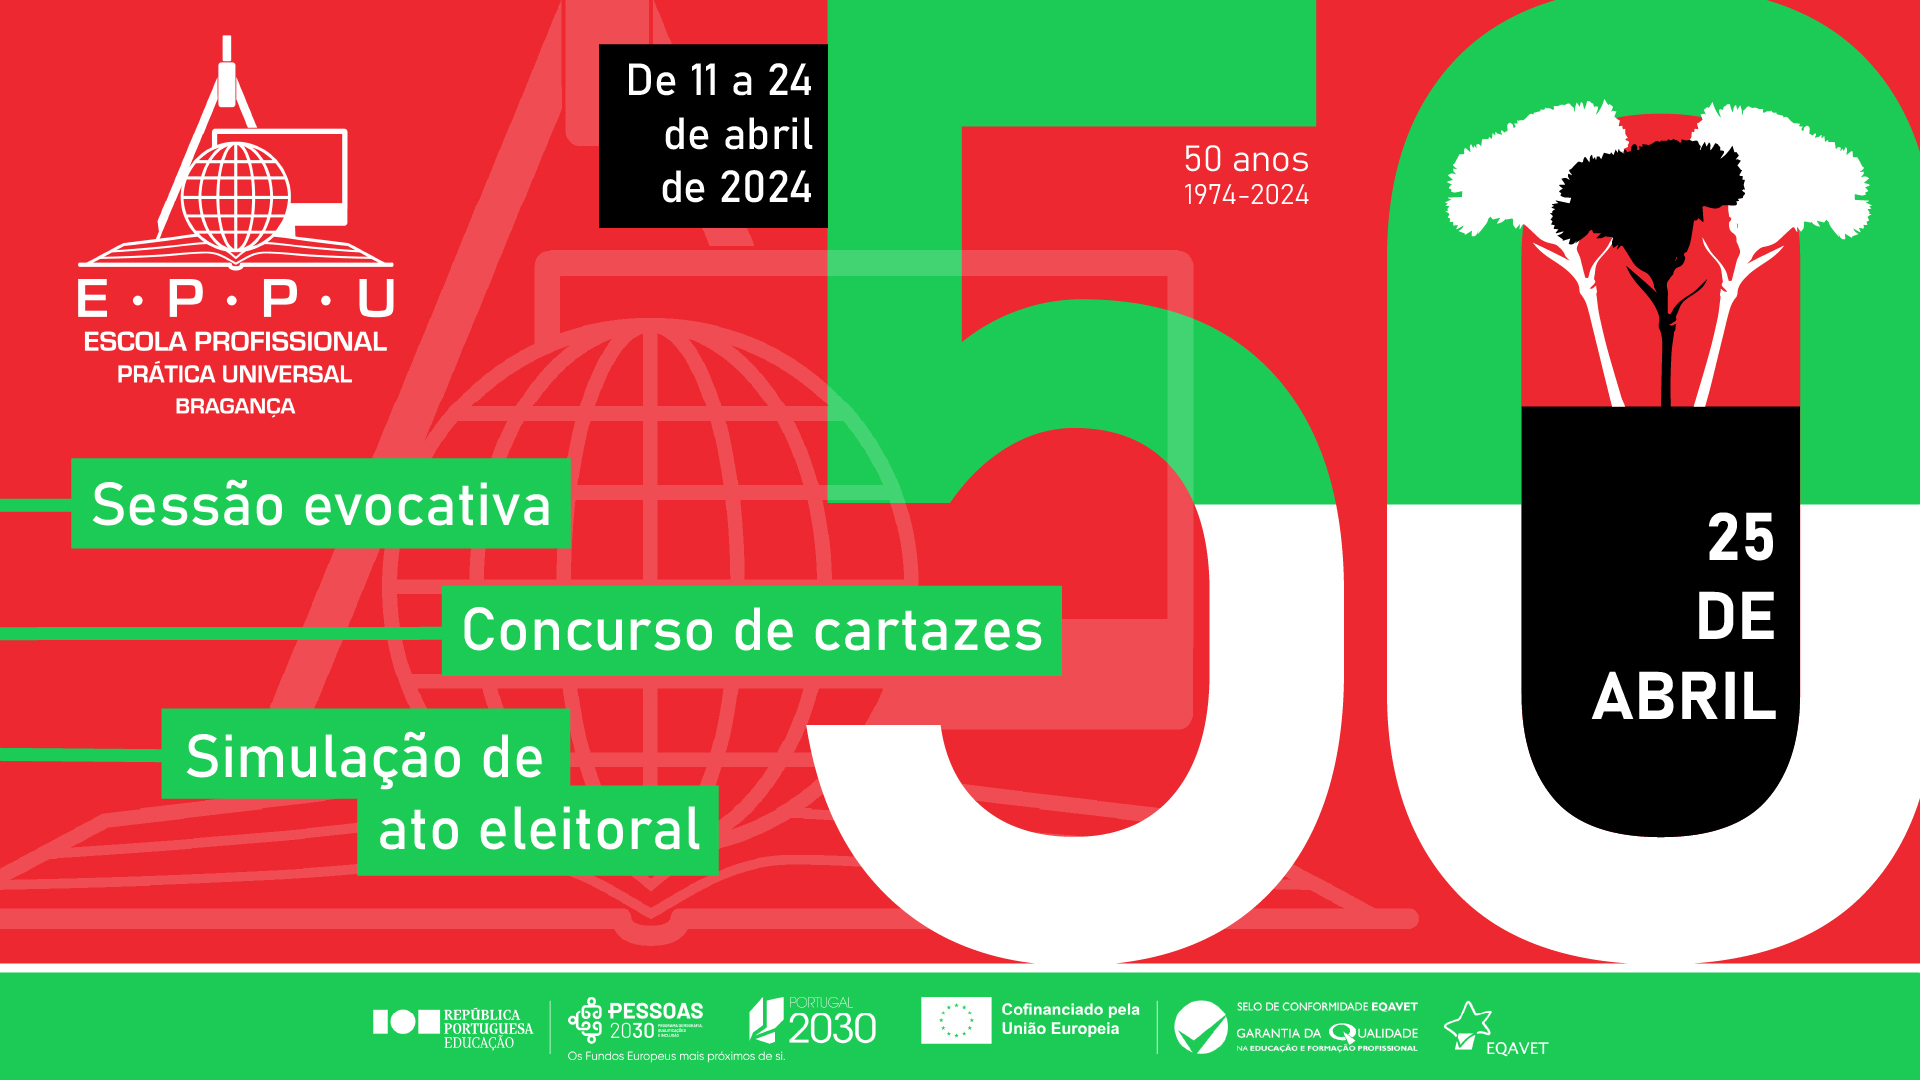 Capa do Evento 50 anos do 25 de abril na EPPU - Escola Profissional Prática Universal de Bragança